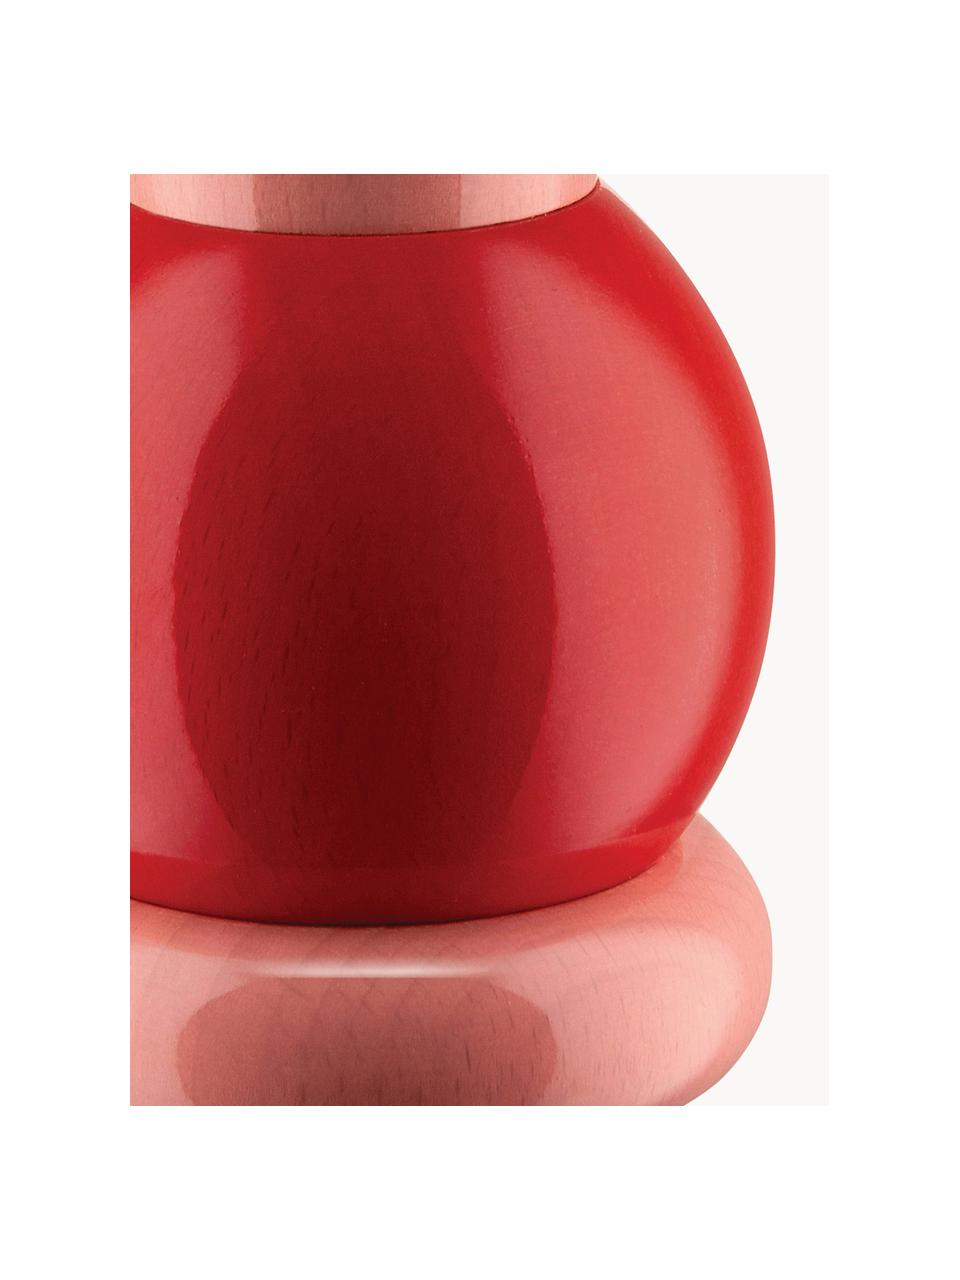 Macinaspezie Twergi, Legno di faggio, macinino in ceramica, Rosa, rosso, giallo acceso, Ø 7 x Alt. 23 cm